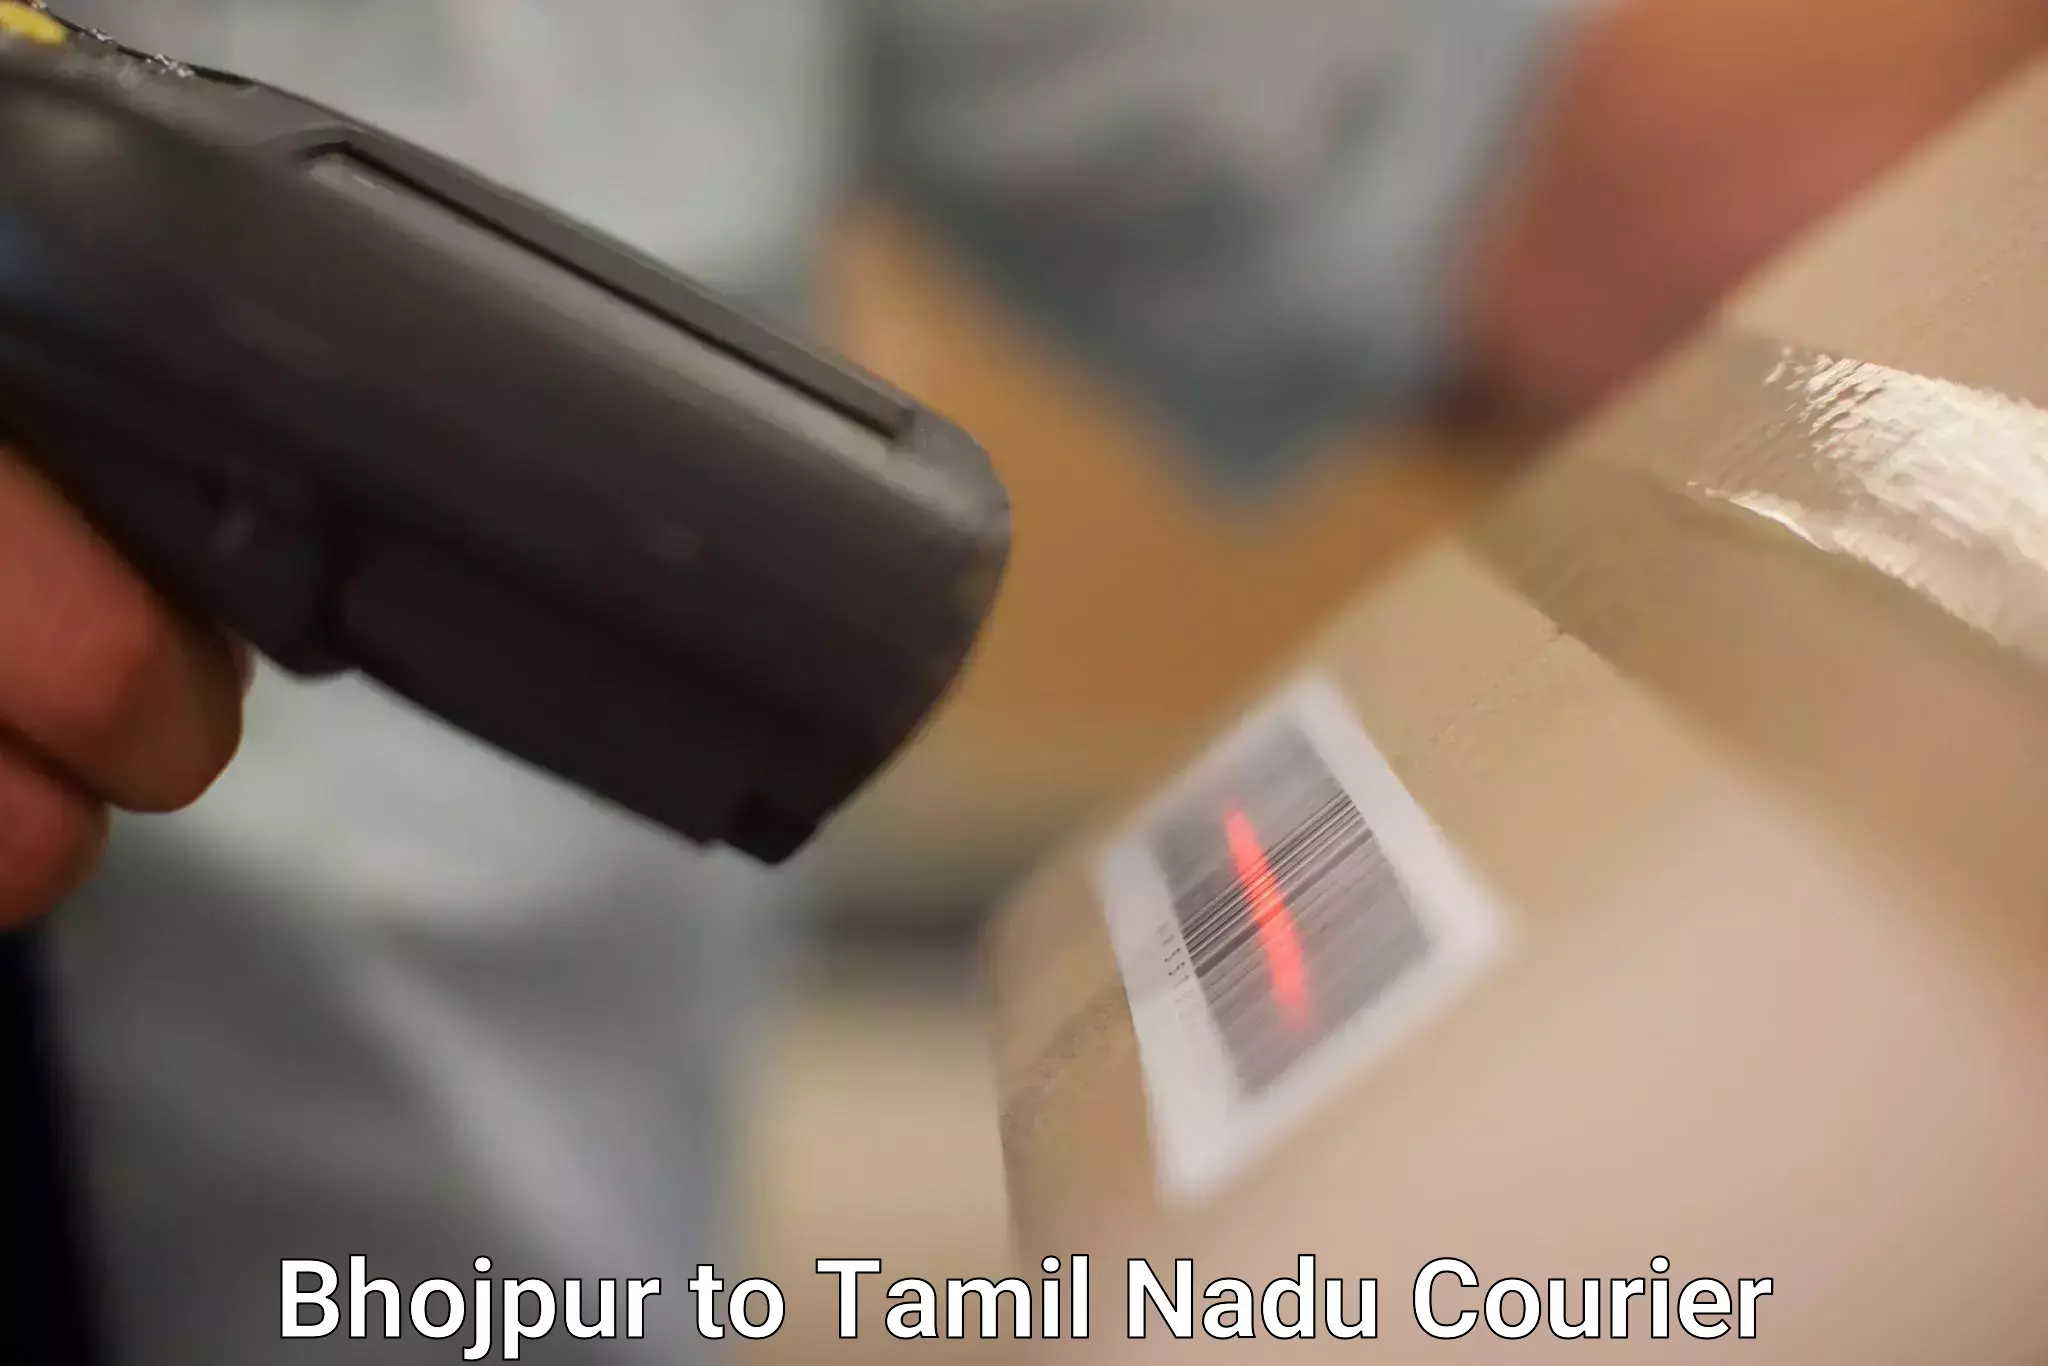 High-speed parcel service Bhojpur to Tamil Nadu